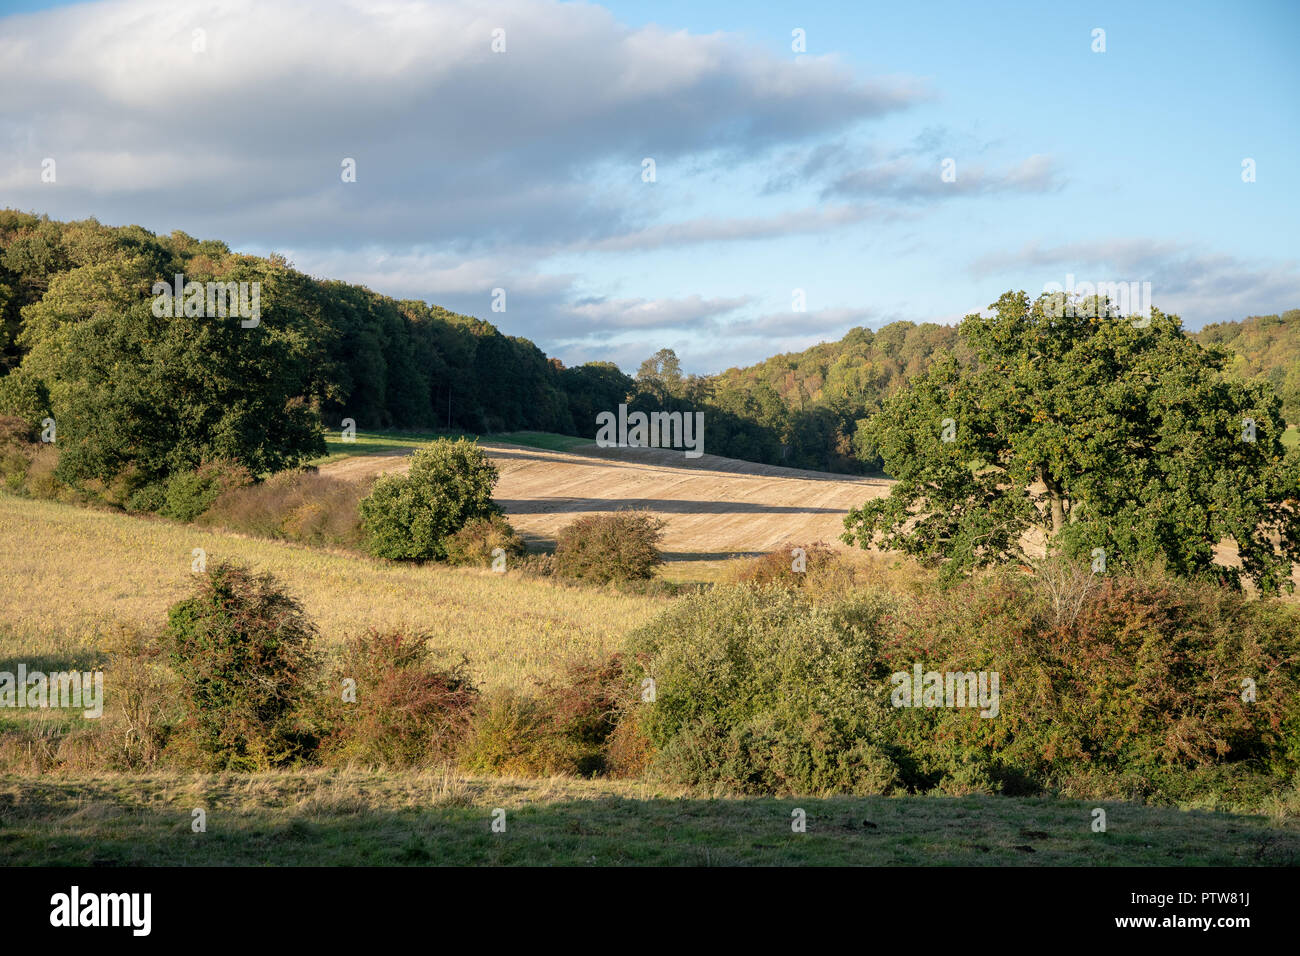 Viste della campagna inglese e in autunno con i campi e gli alberi Foto Stock